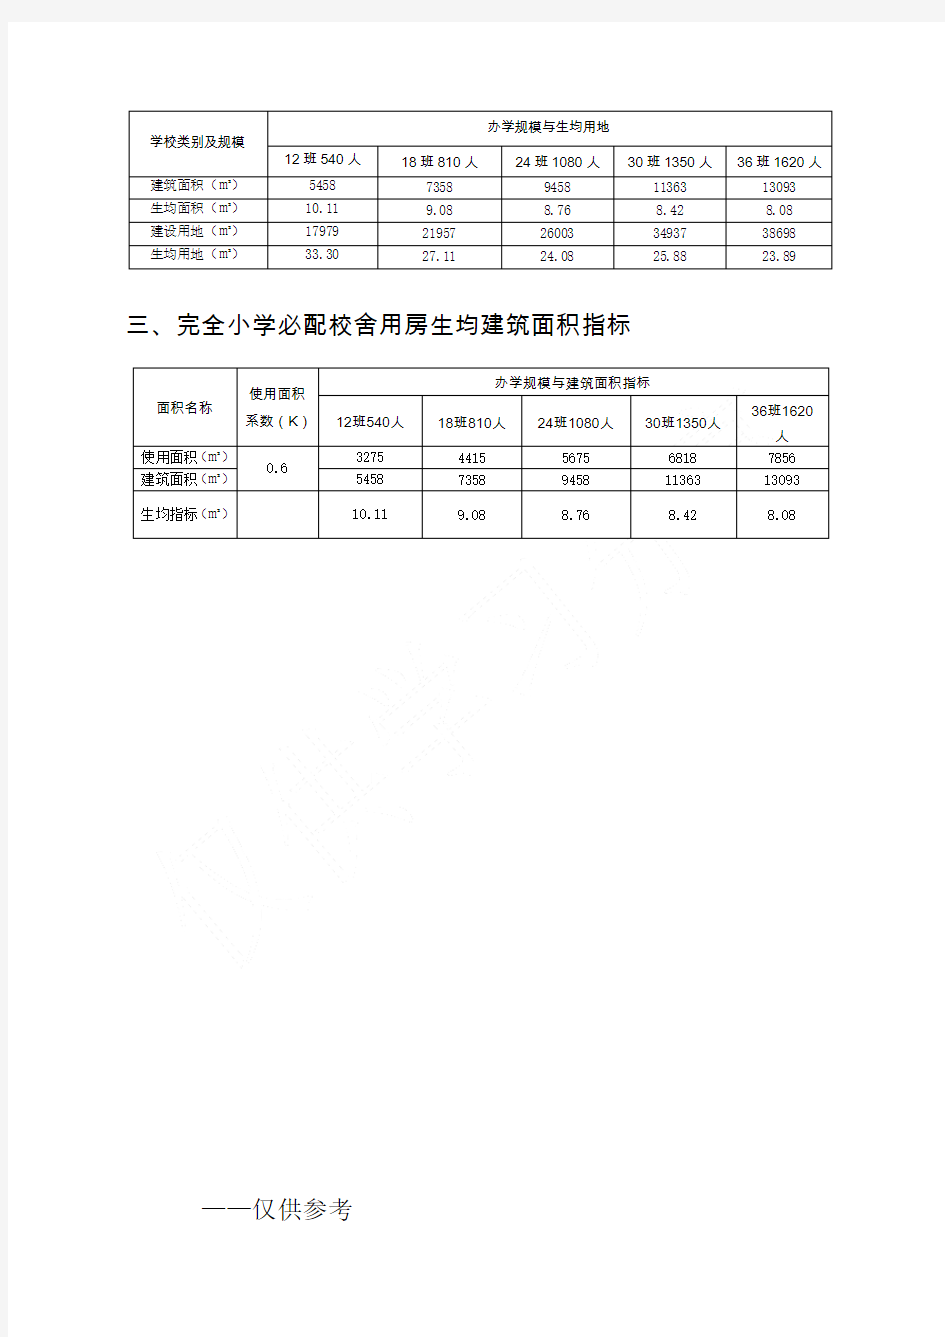 江苏省义务教育学校资源配置标准(试行)